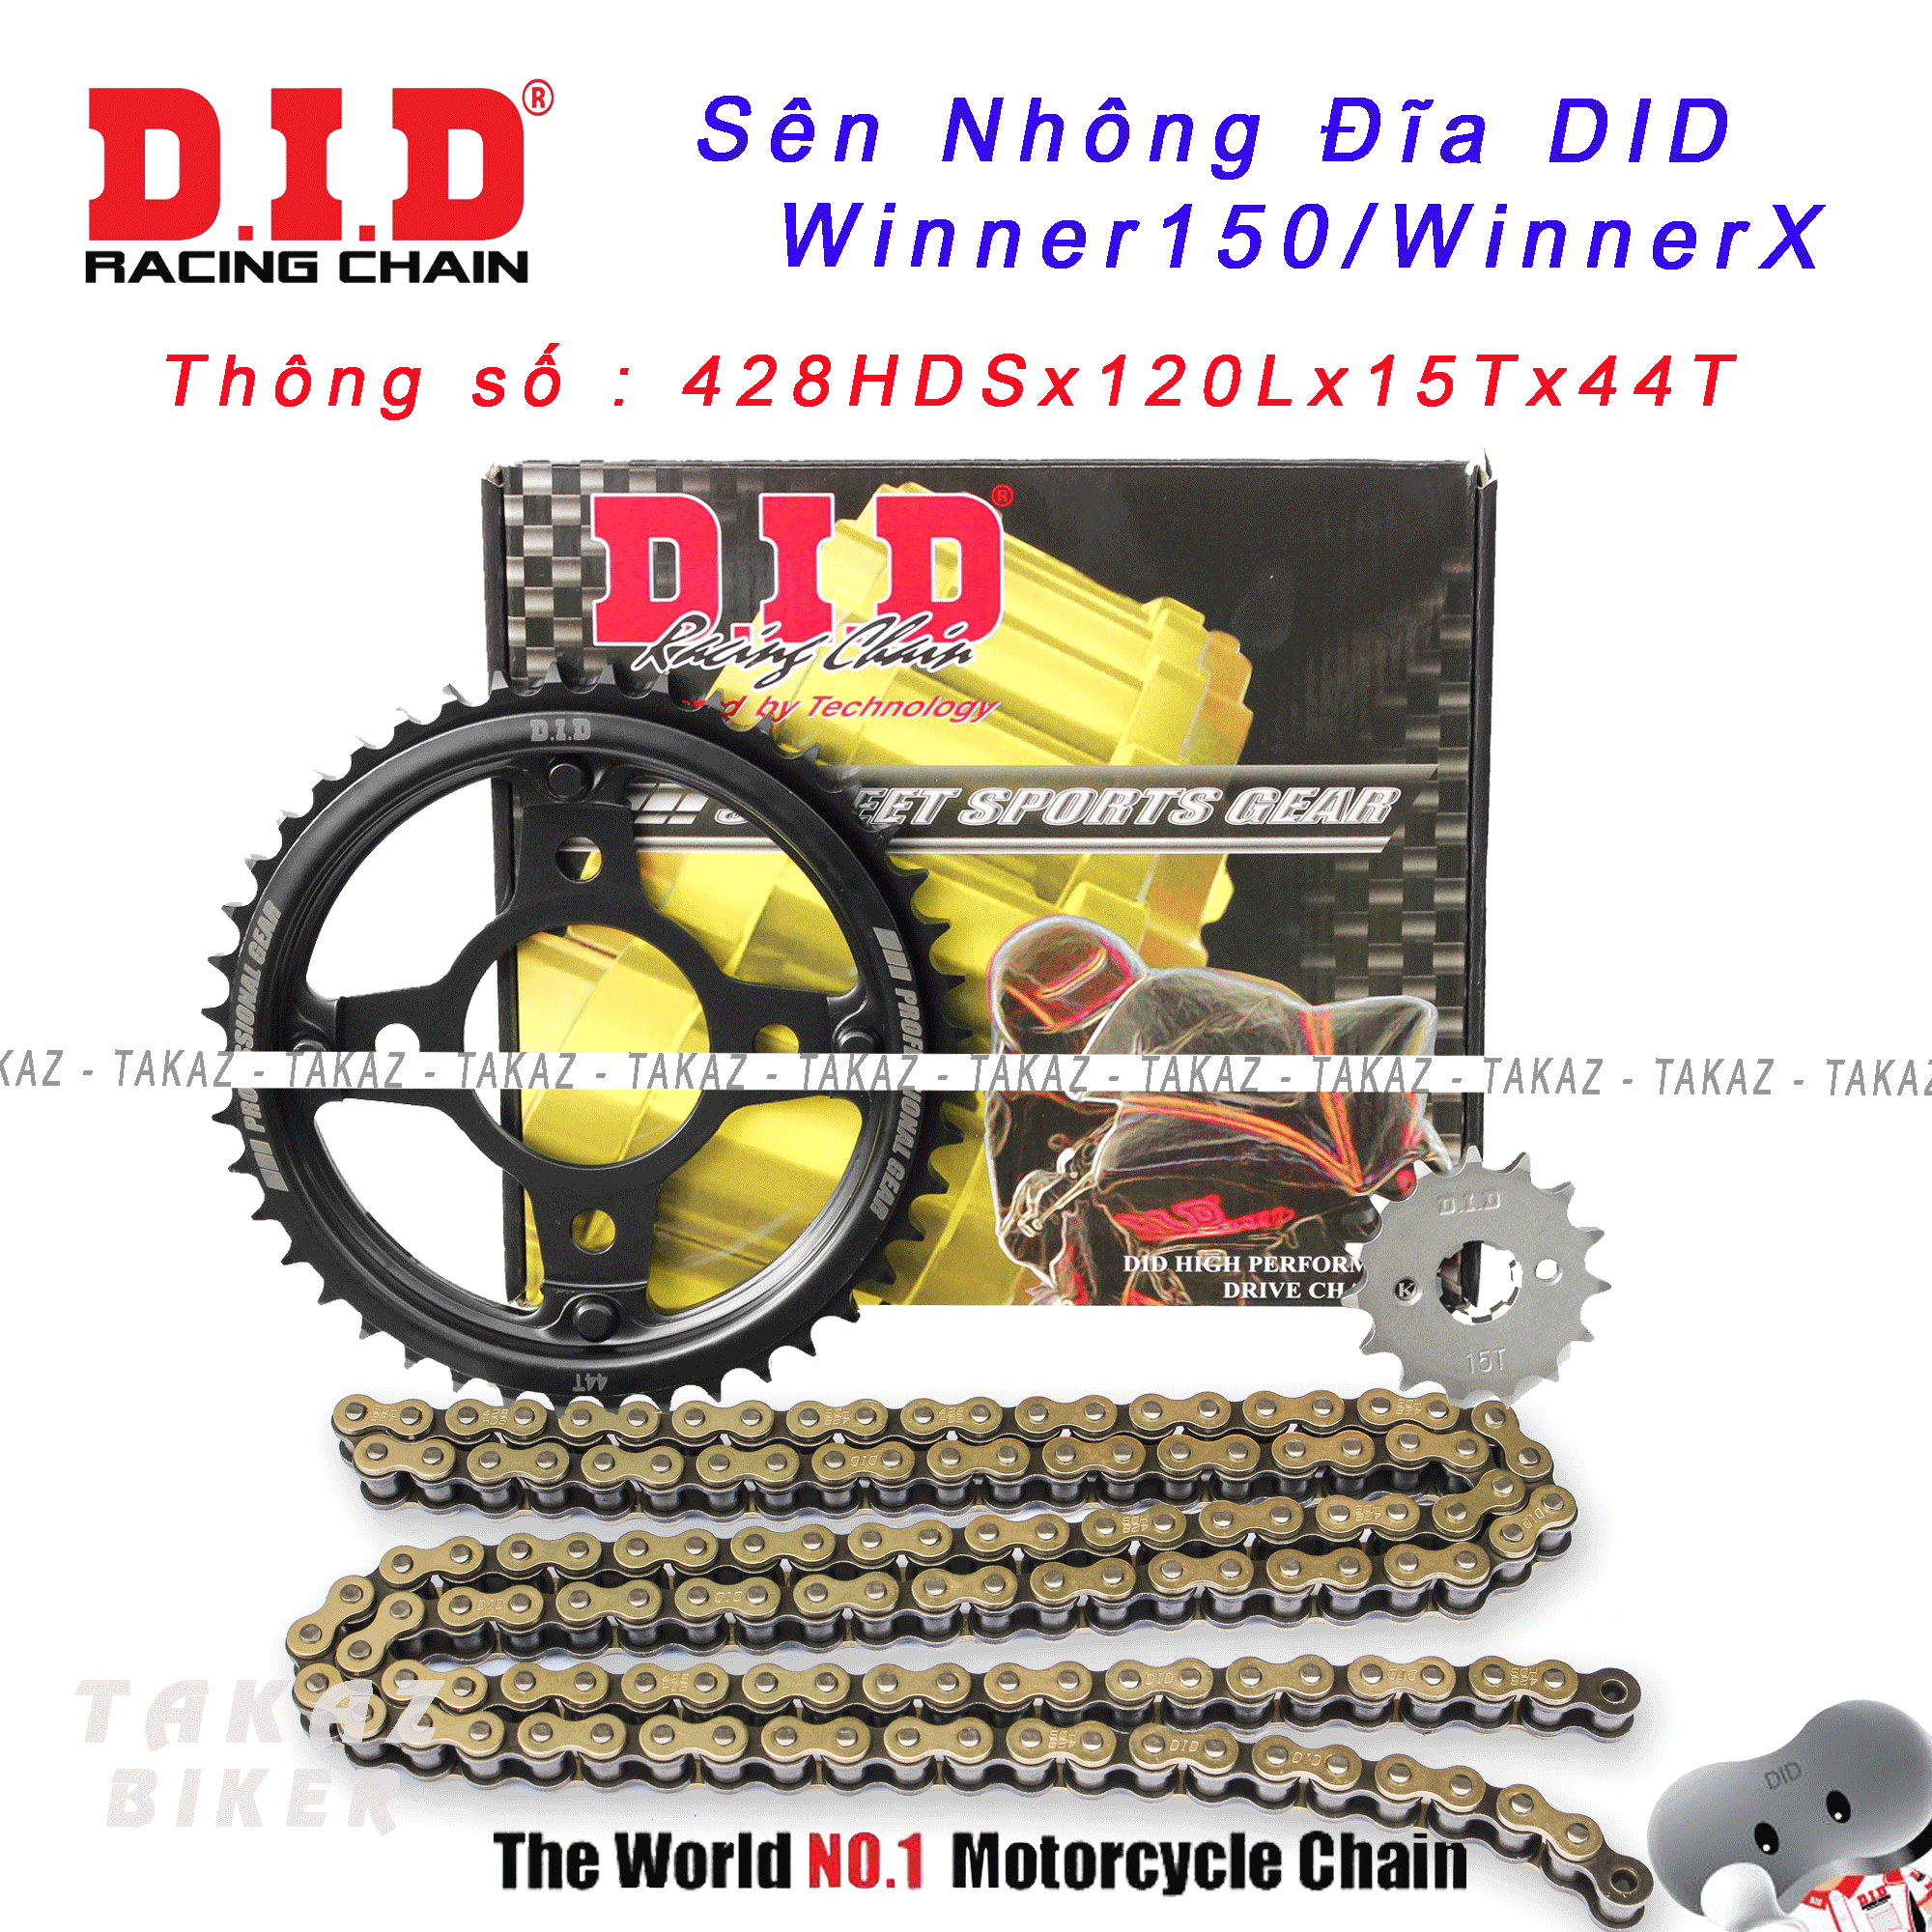 Sên Nhông Dĩa DID Honda Winner X Winner 150cc Sonic 150cc